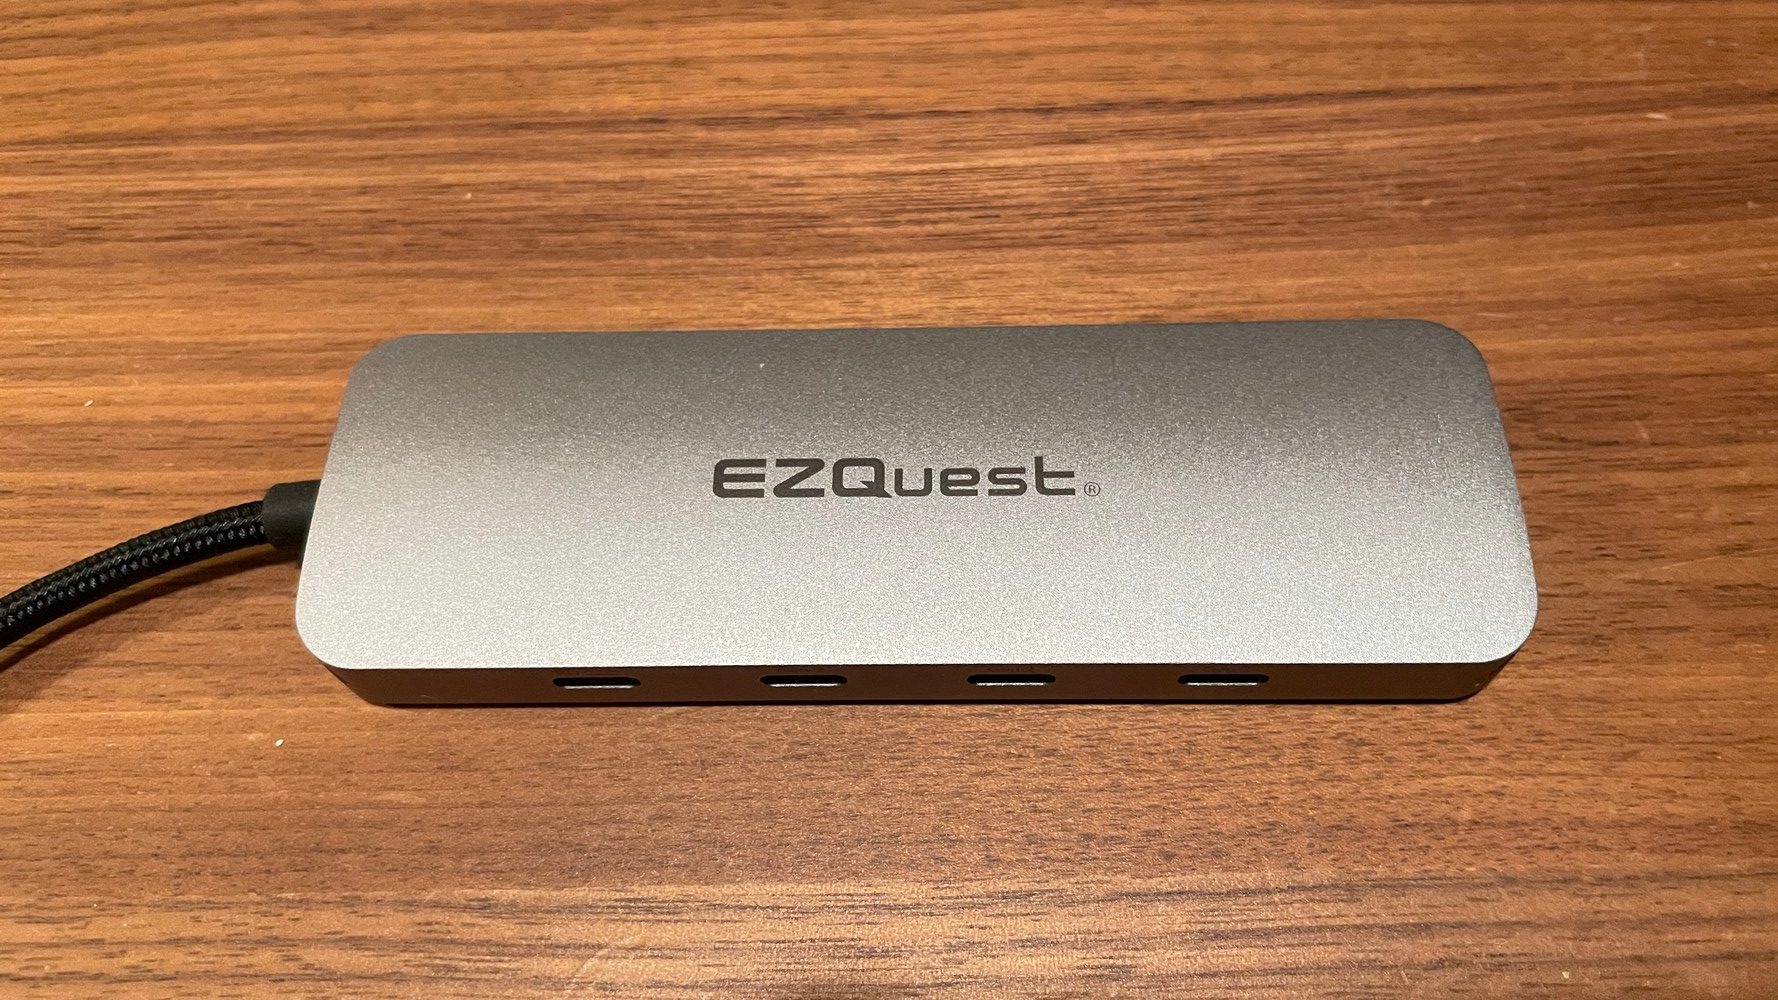 EZQuest USB-C Gen 2 Hub Adaptor 7-Ports